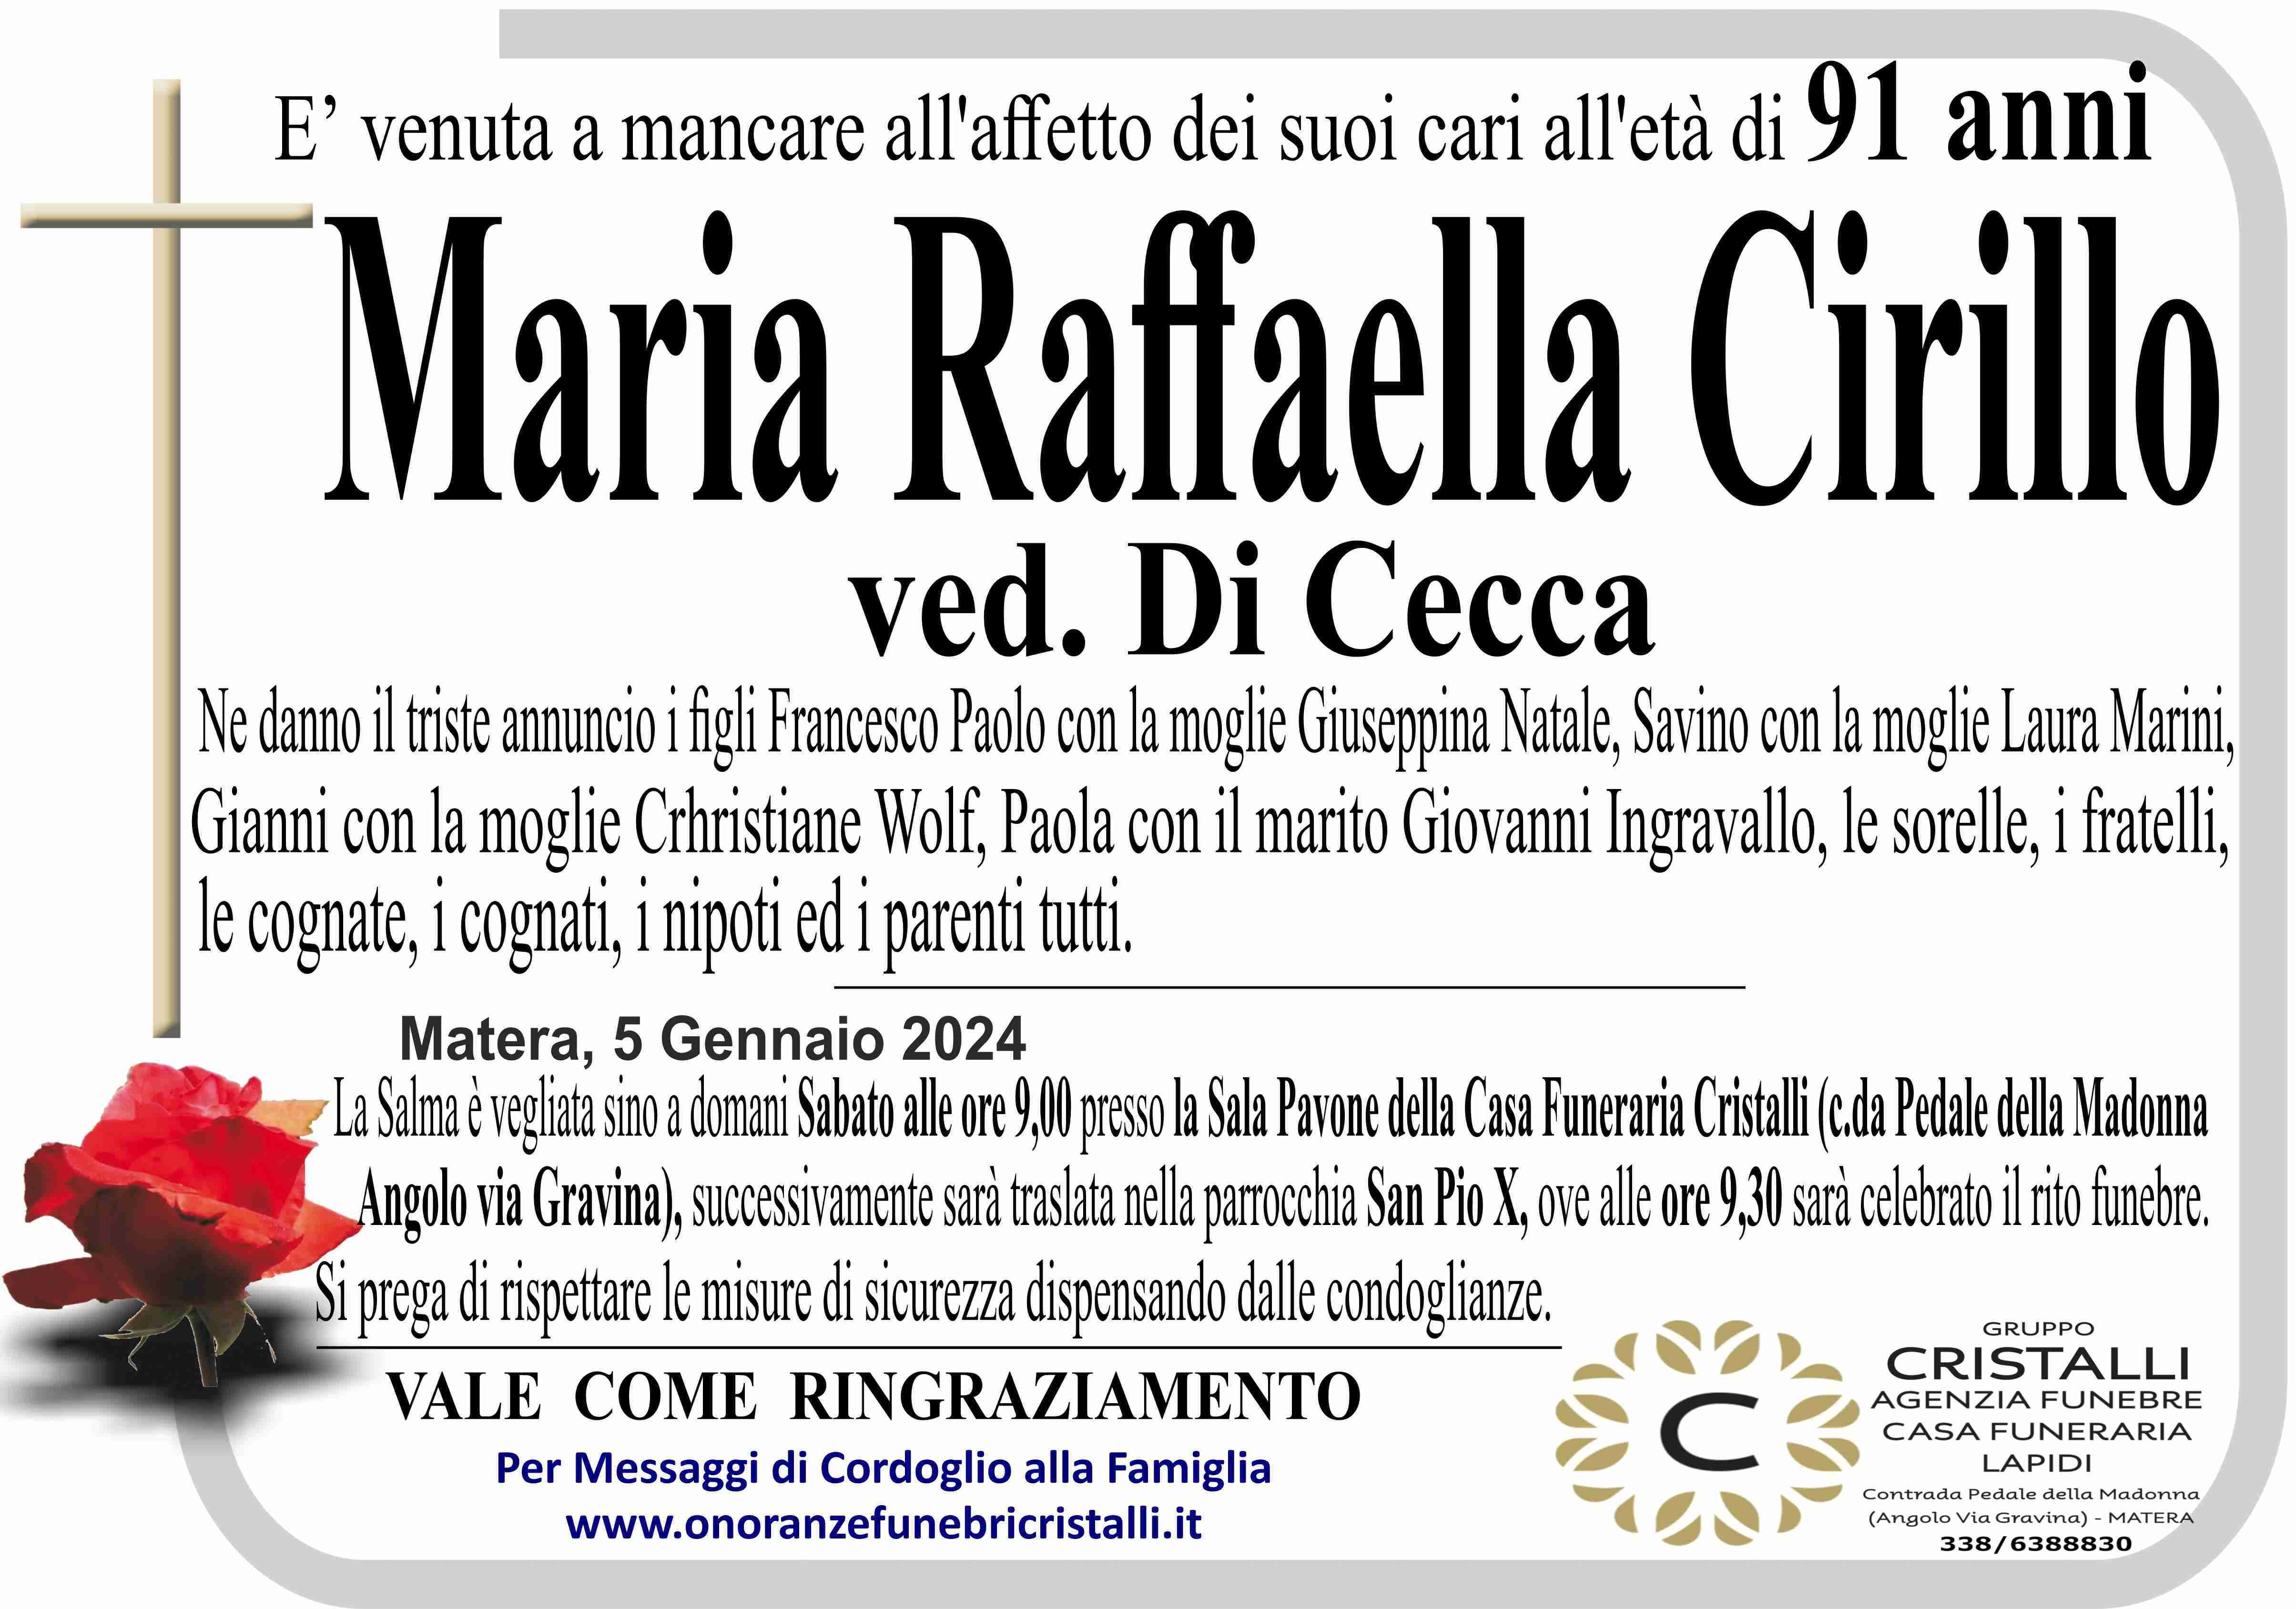 Maria Raffaella Cirillo